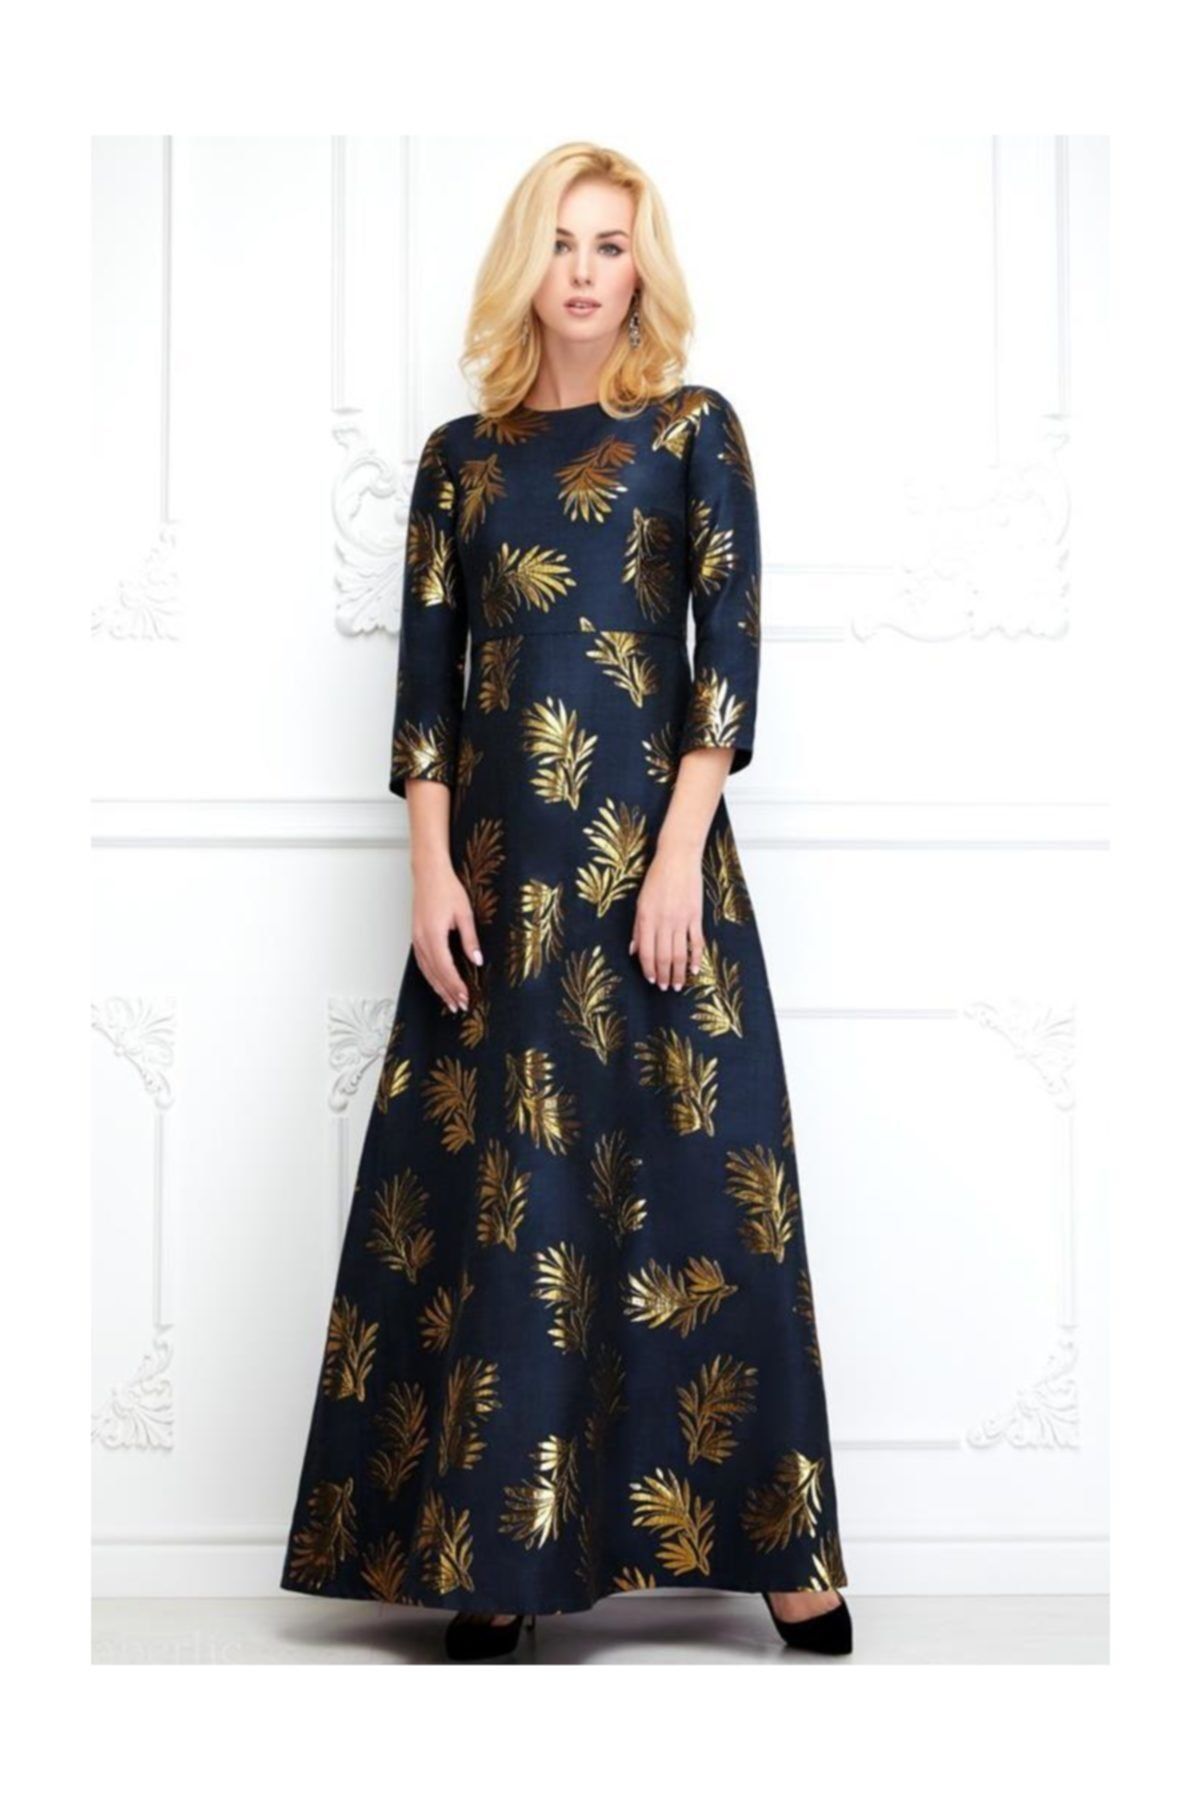 Faberlic Kadın Lacivert Uzun Kollu Desenli Elbise 46 Beden